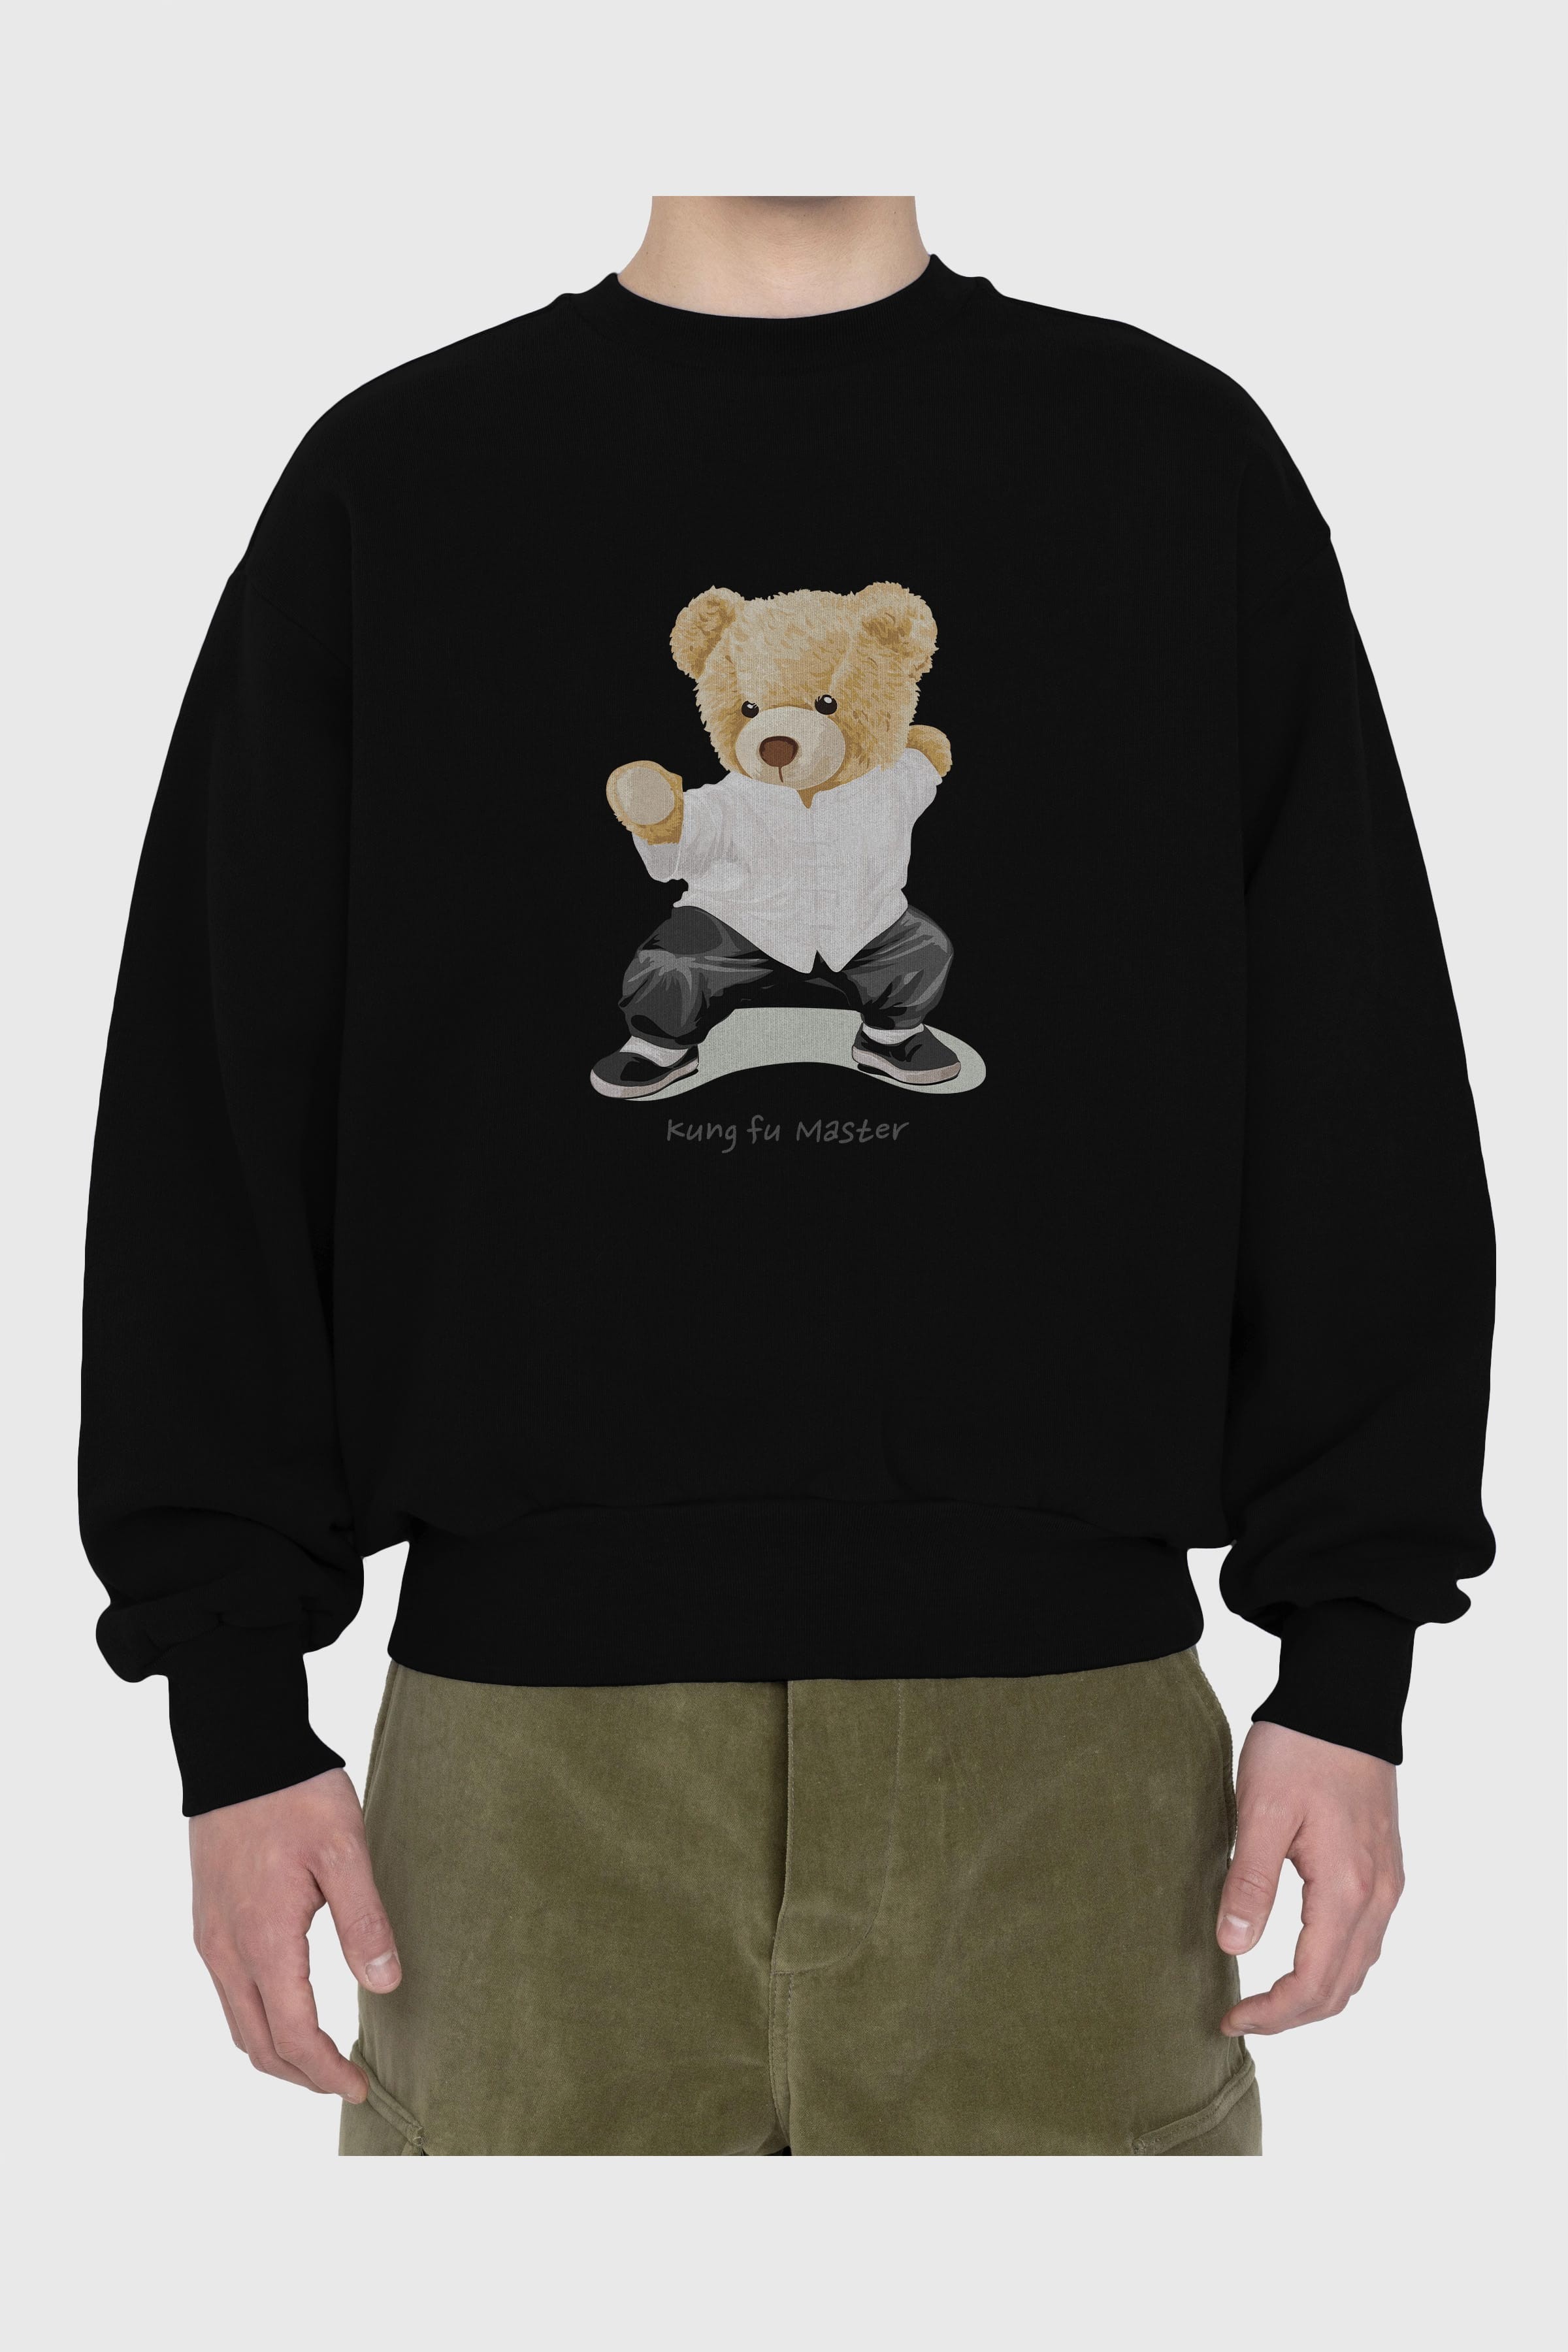 Teddy Bear Kung Fu Master Ön Baskılı Oversize Sweatshirt Erkek Kadın Unisex